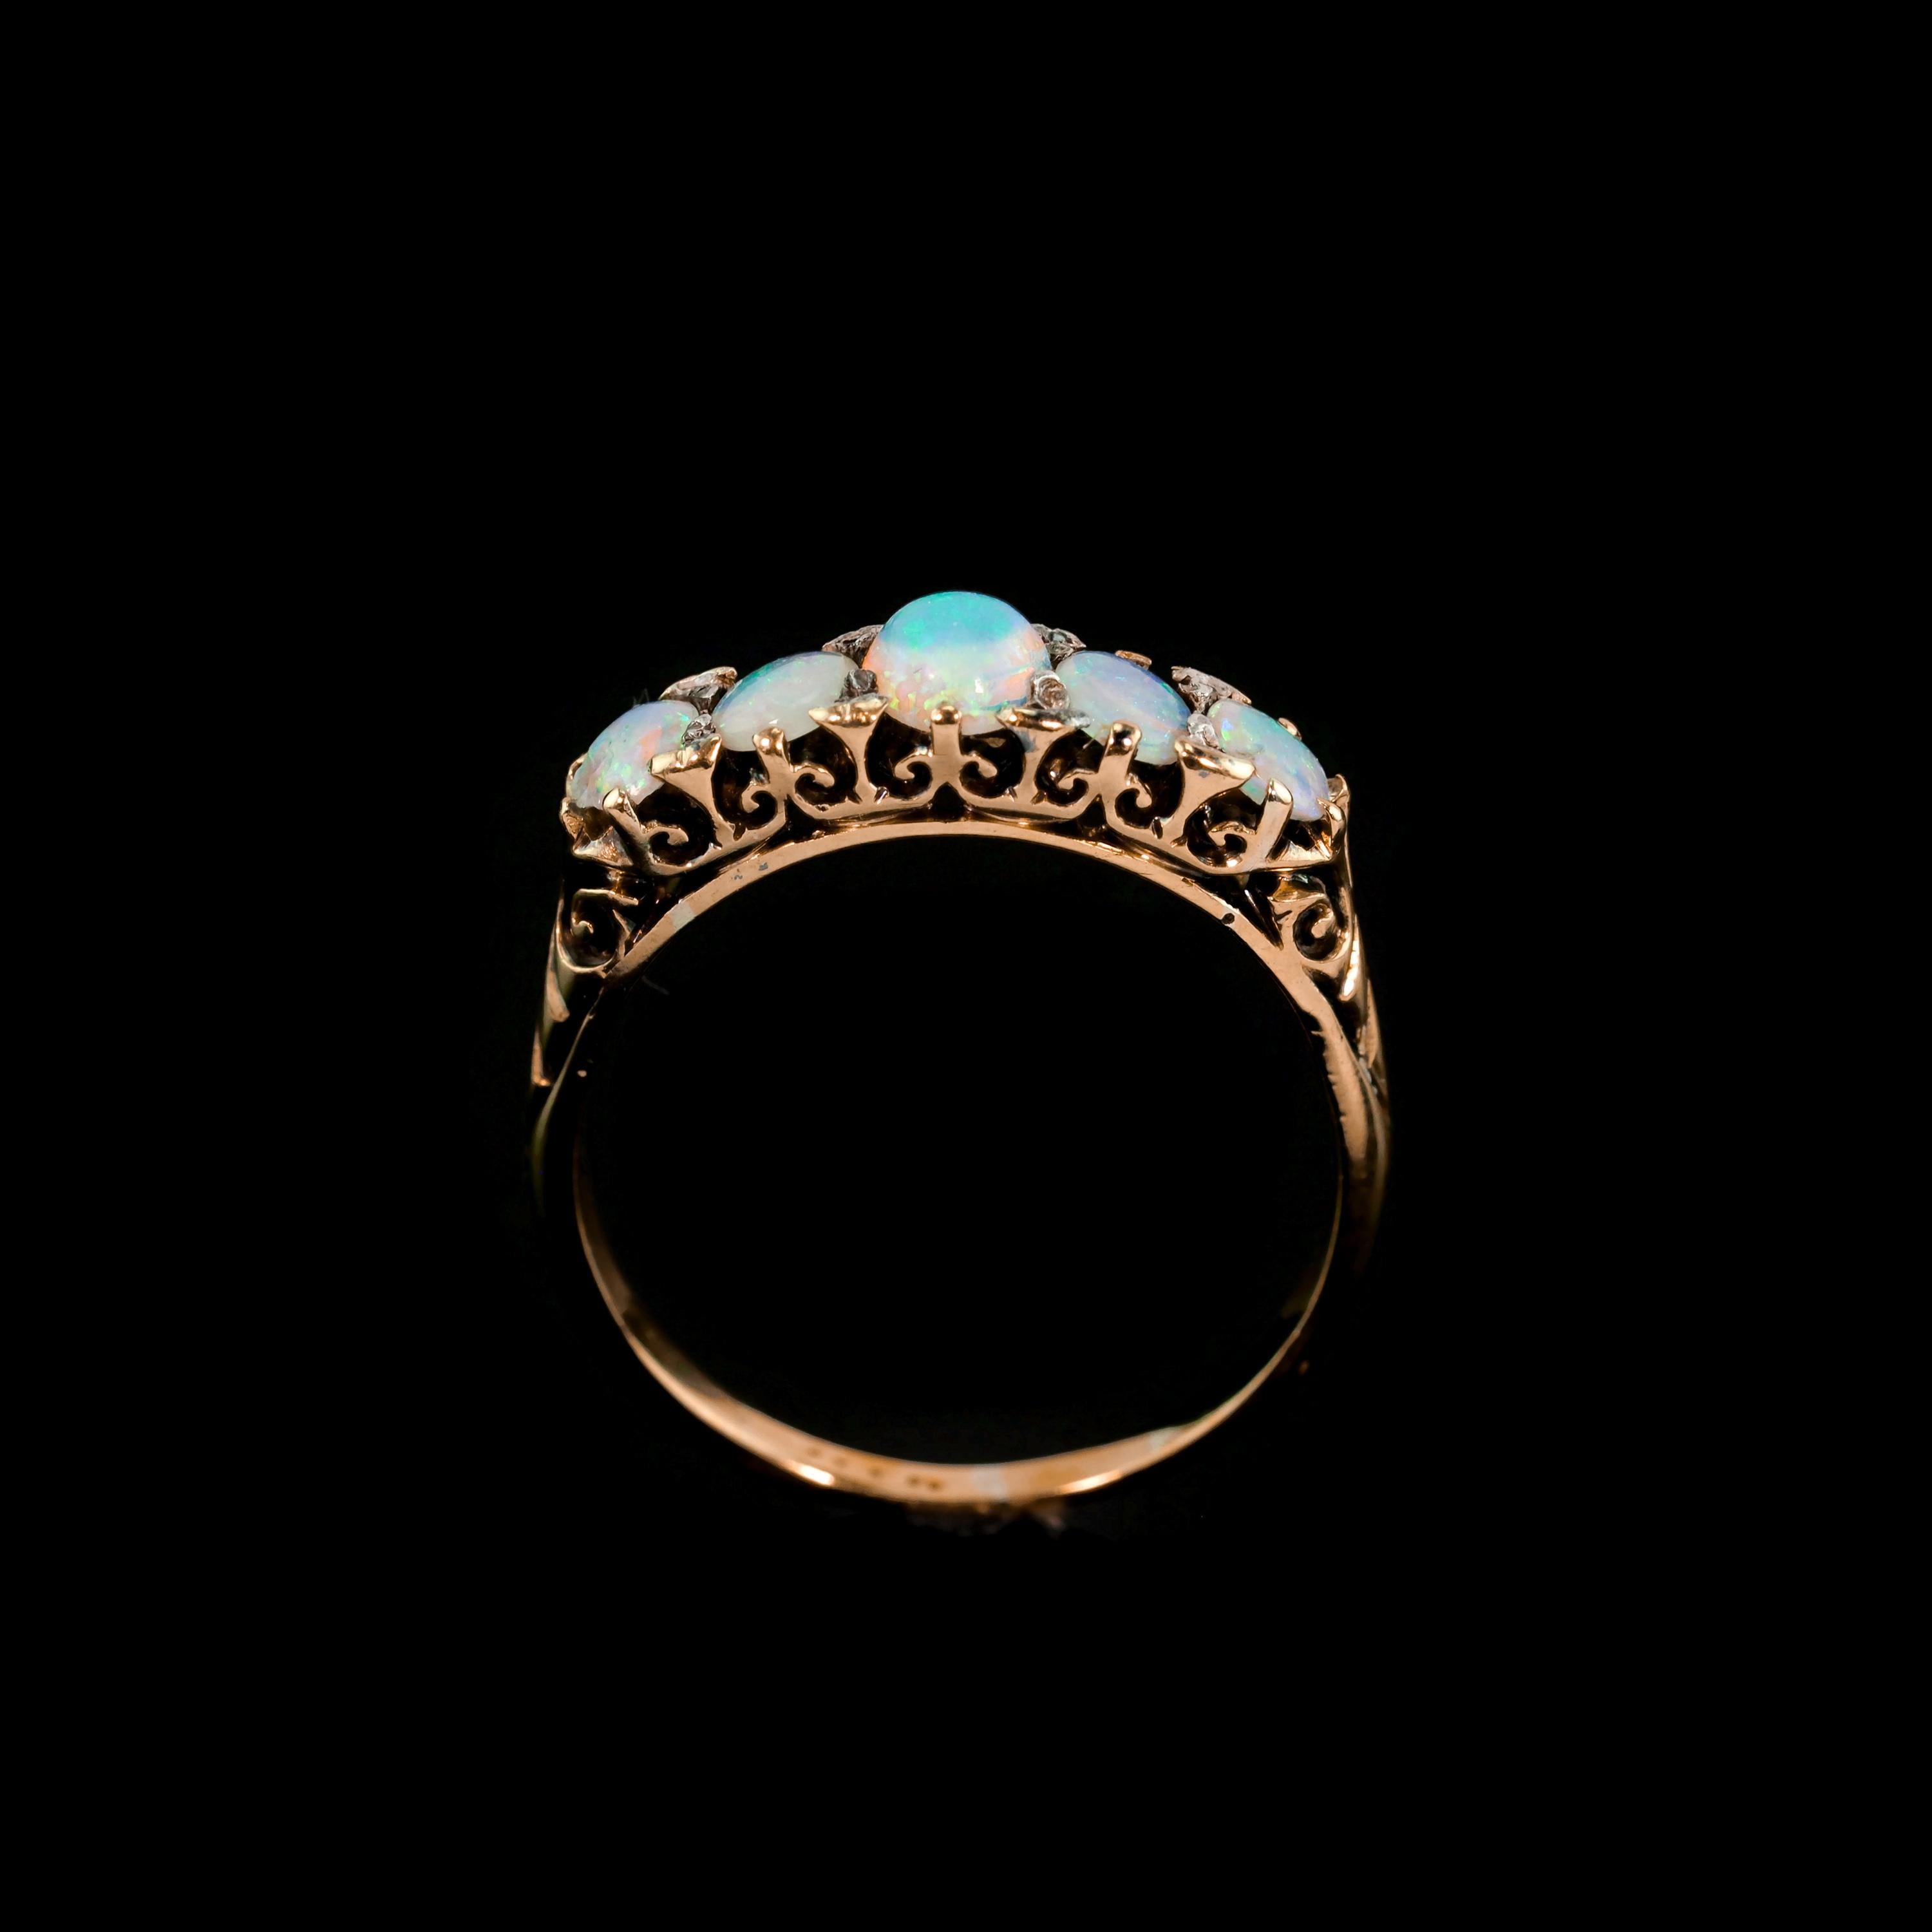 Antique Opal 14K Gold Ring with 5 Cabochons & Fleur-de-lis - Victorian c.1890 11